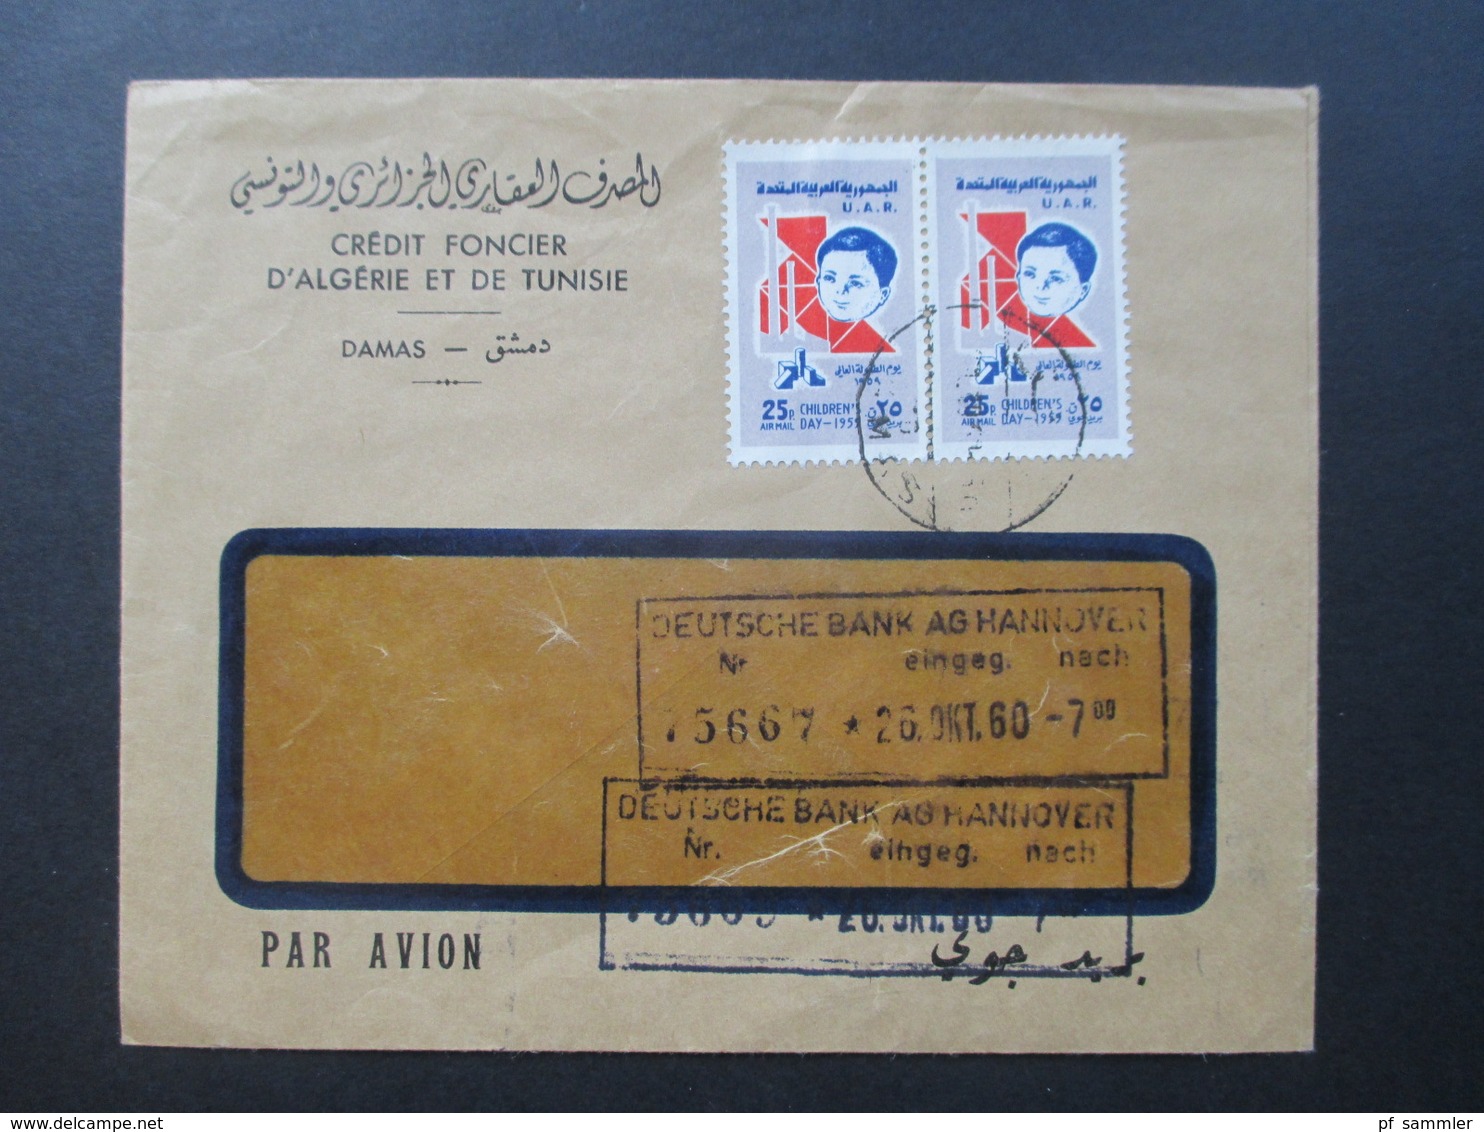 Syrien / UAR 1960 Air Mail / Luftpost Credit Foncier D'Algerie Et De Tunisie Damas. Marken Children's Day 1959 - Syria